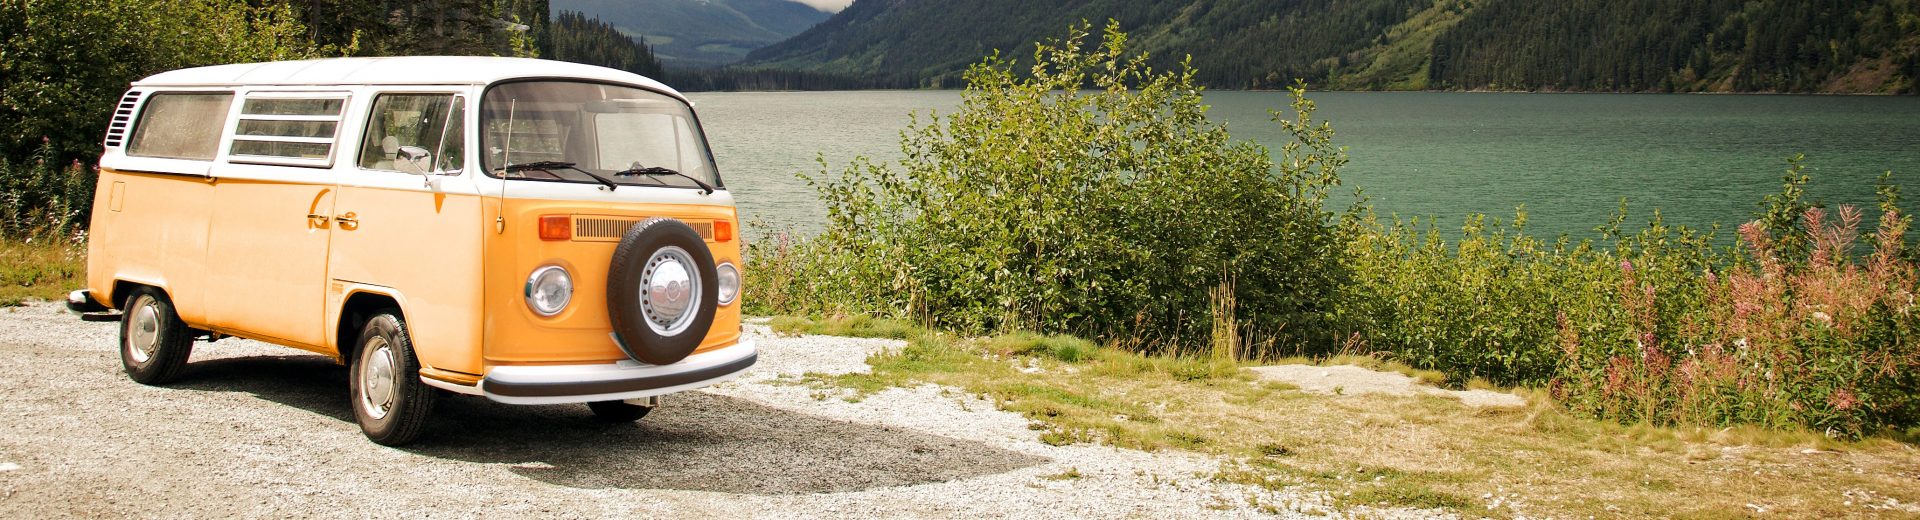 Retro Volkswagen t2 in noorwegen, bij een fjord kamperen